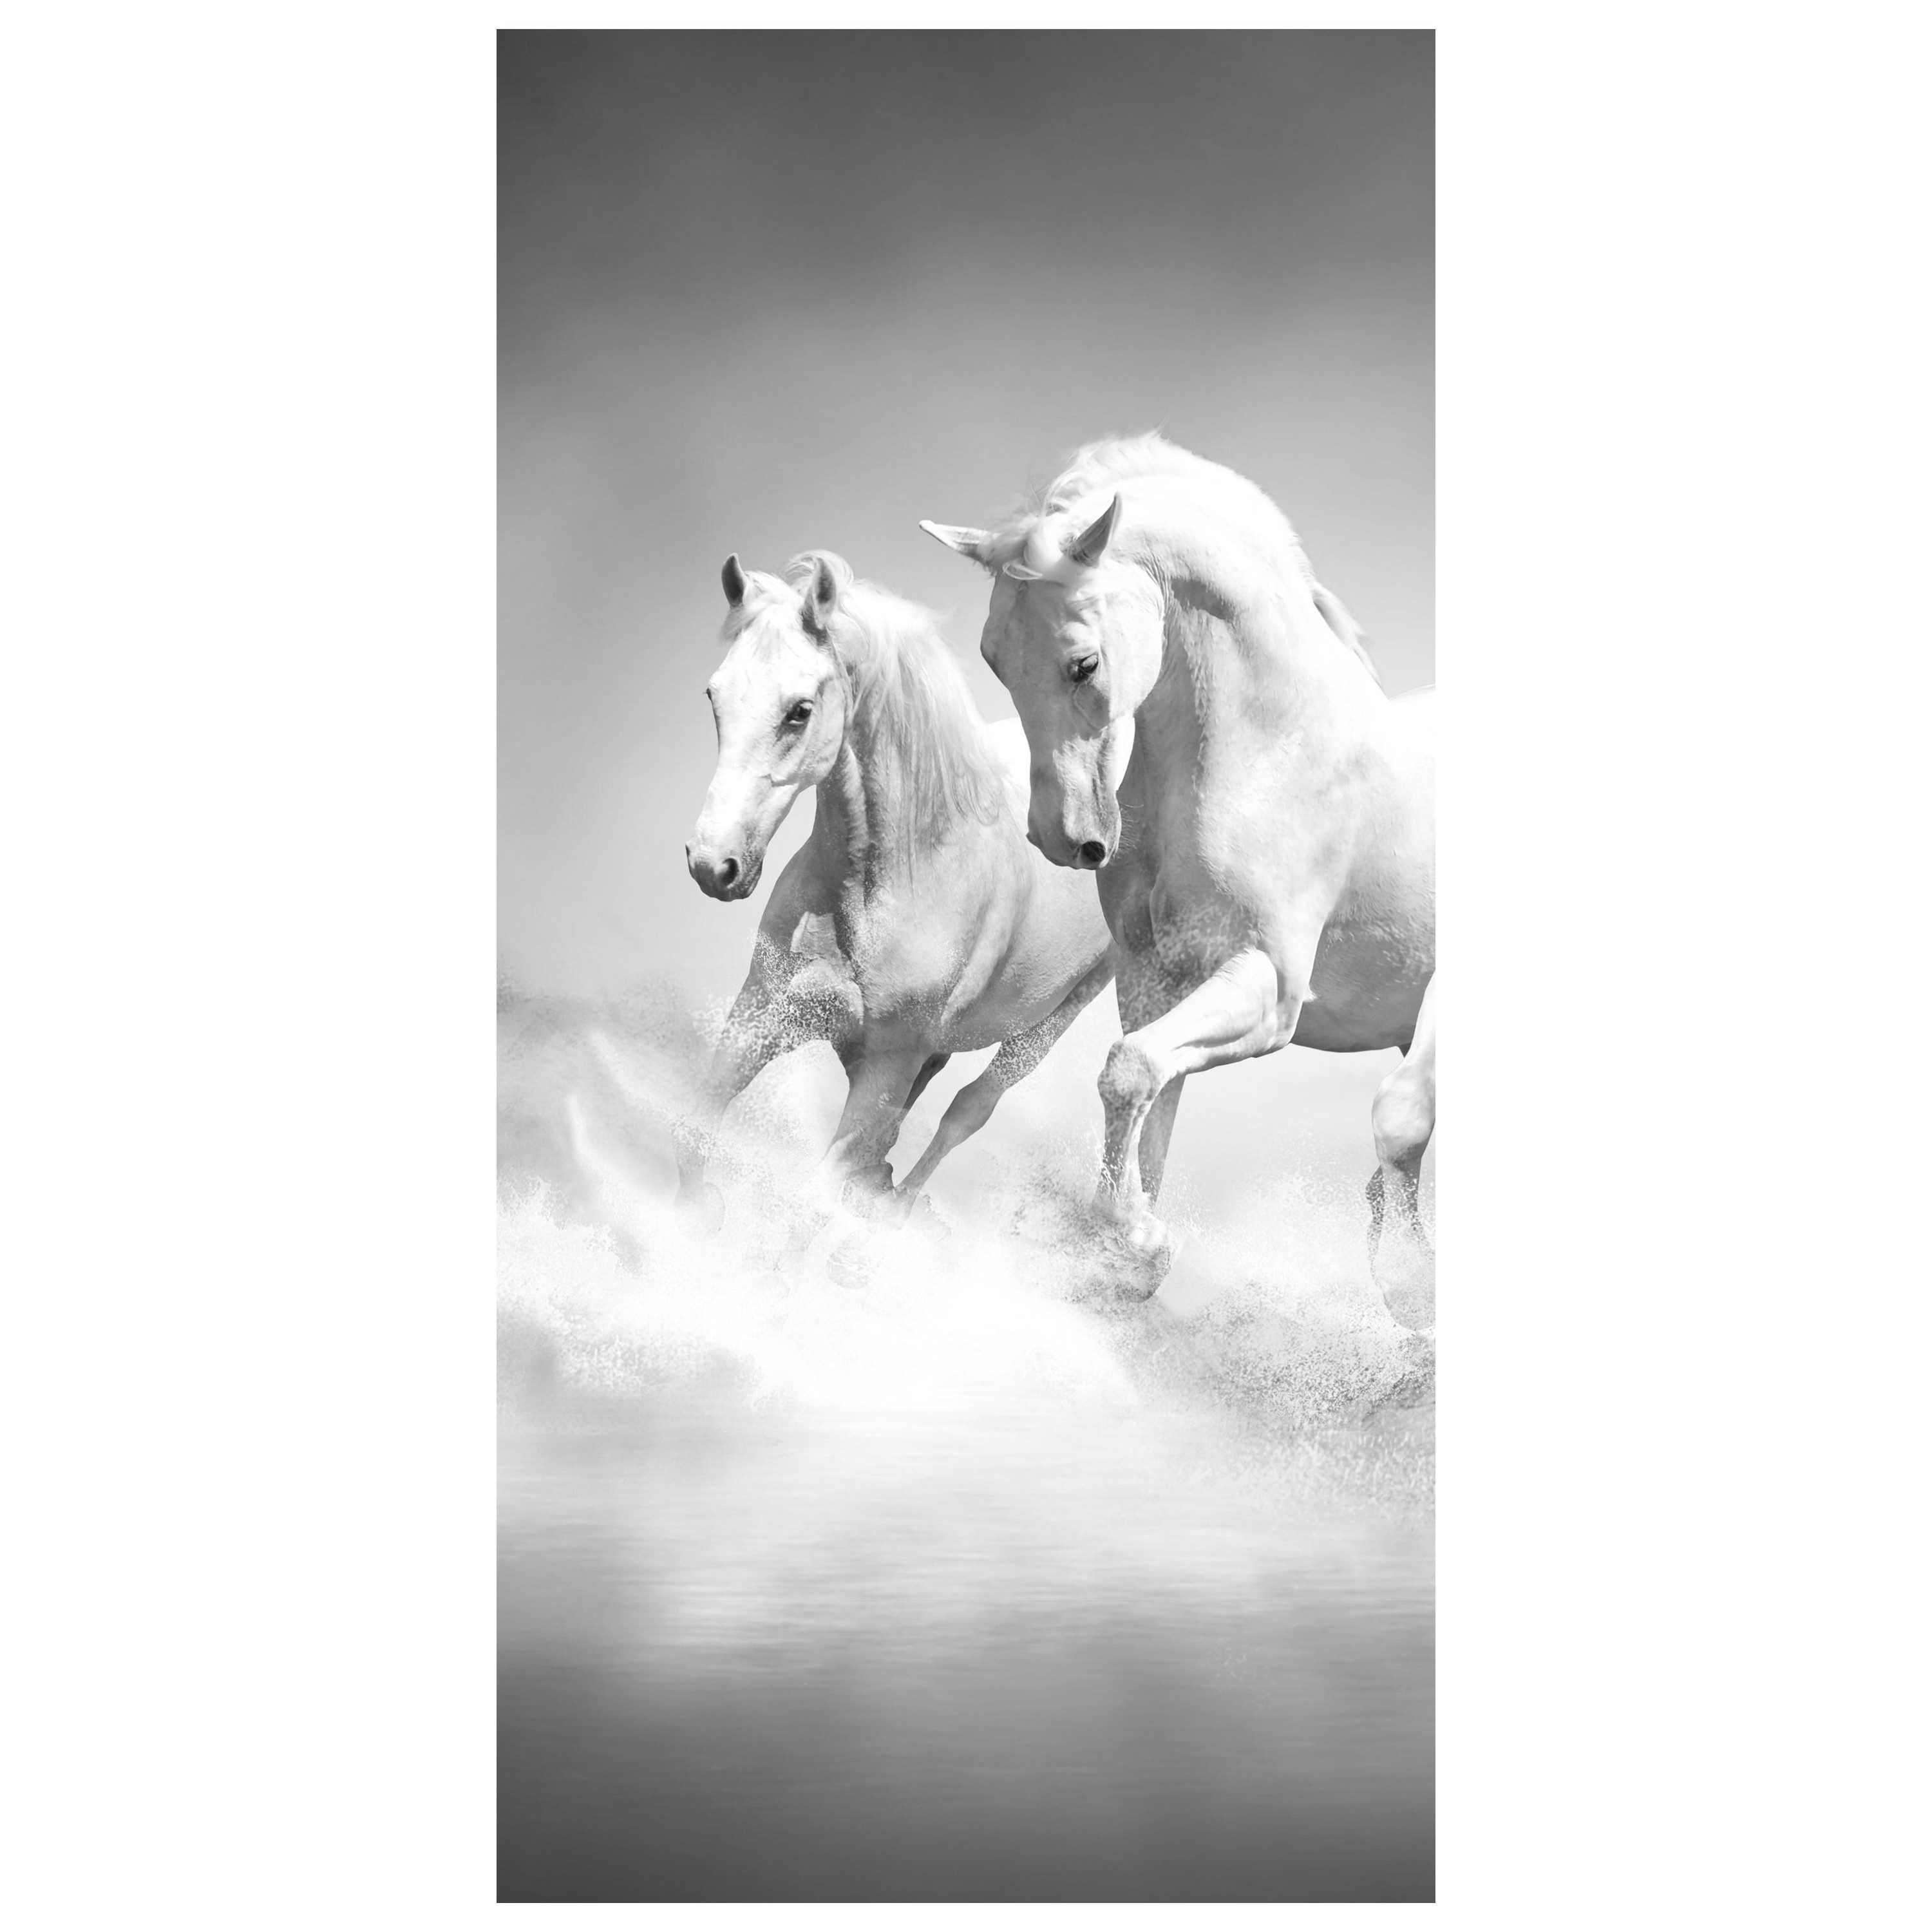 wandmotiv24 Türtapete weiße Traumpferde, glatt, Fototapete, Wandtapete, Motivtapete, matt, selbstklebende Dekorfolie